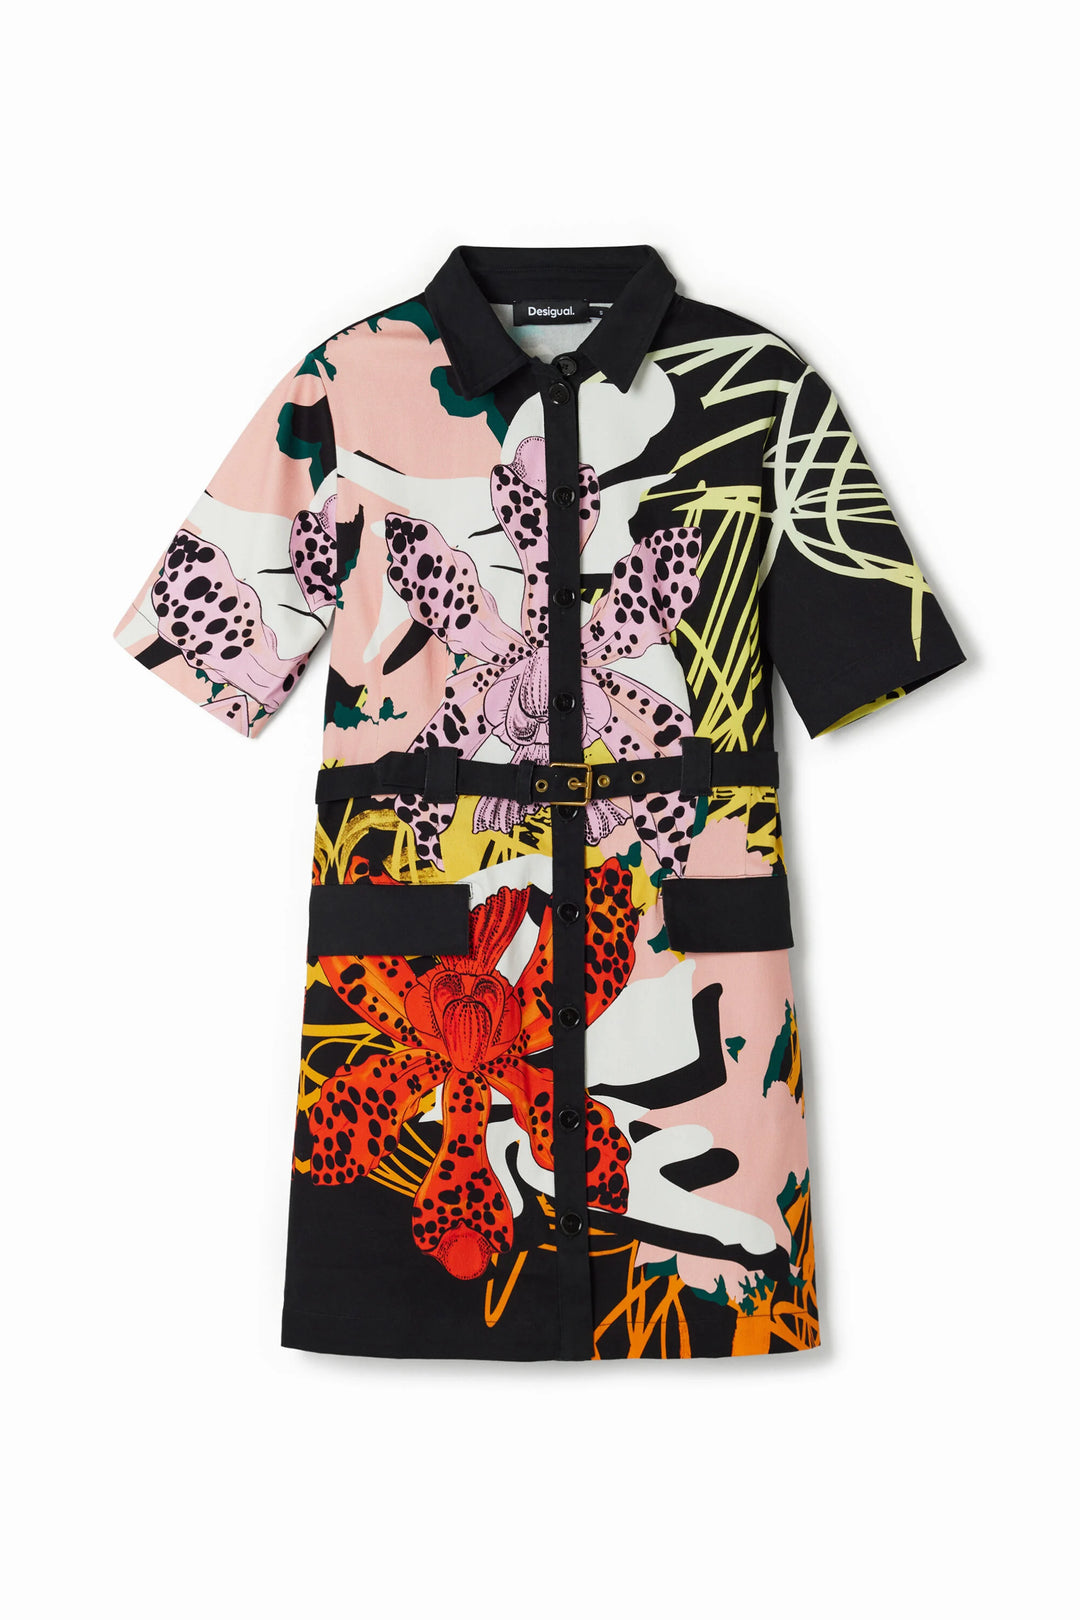 Desigual - M. Christian Lacroix Short Orchid Shirt Dress